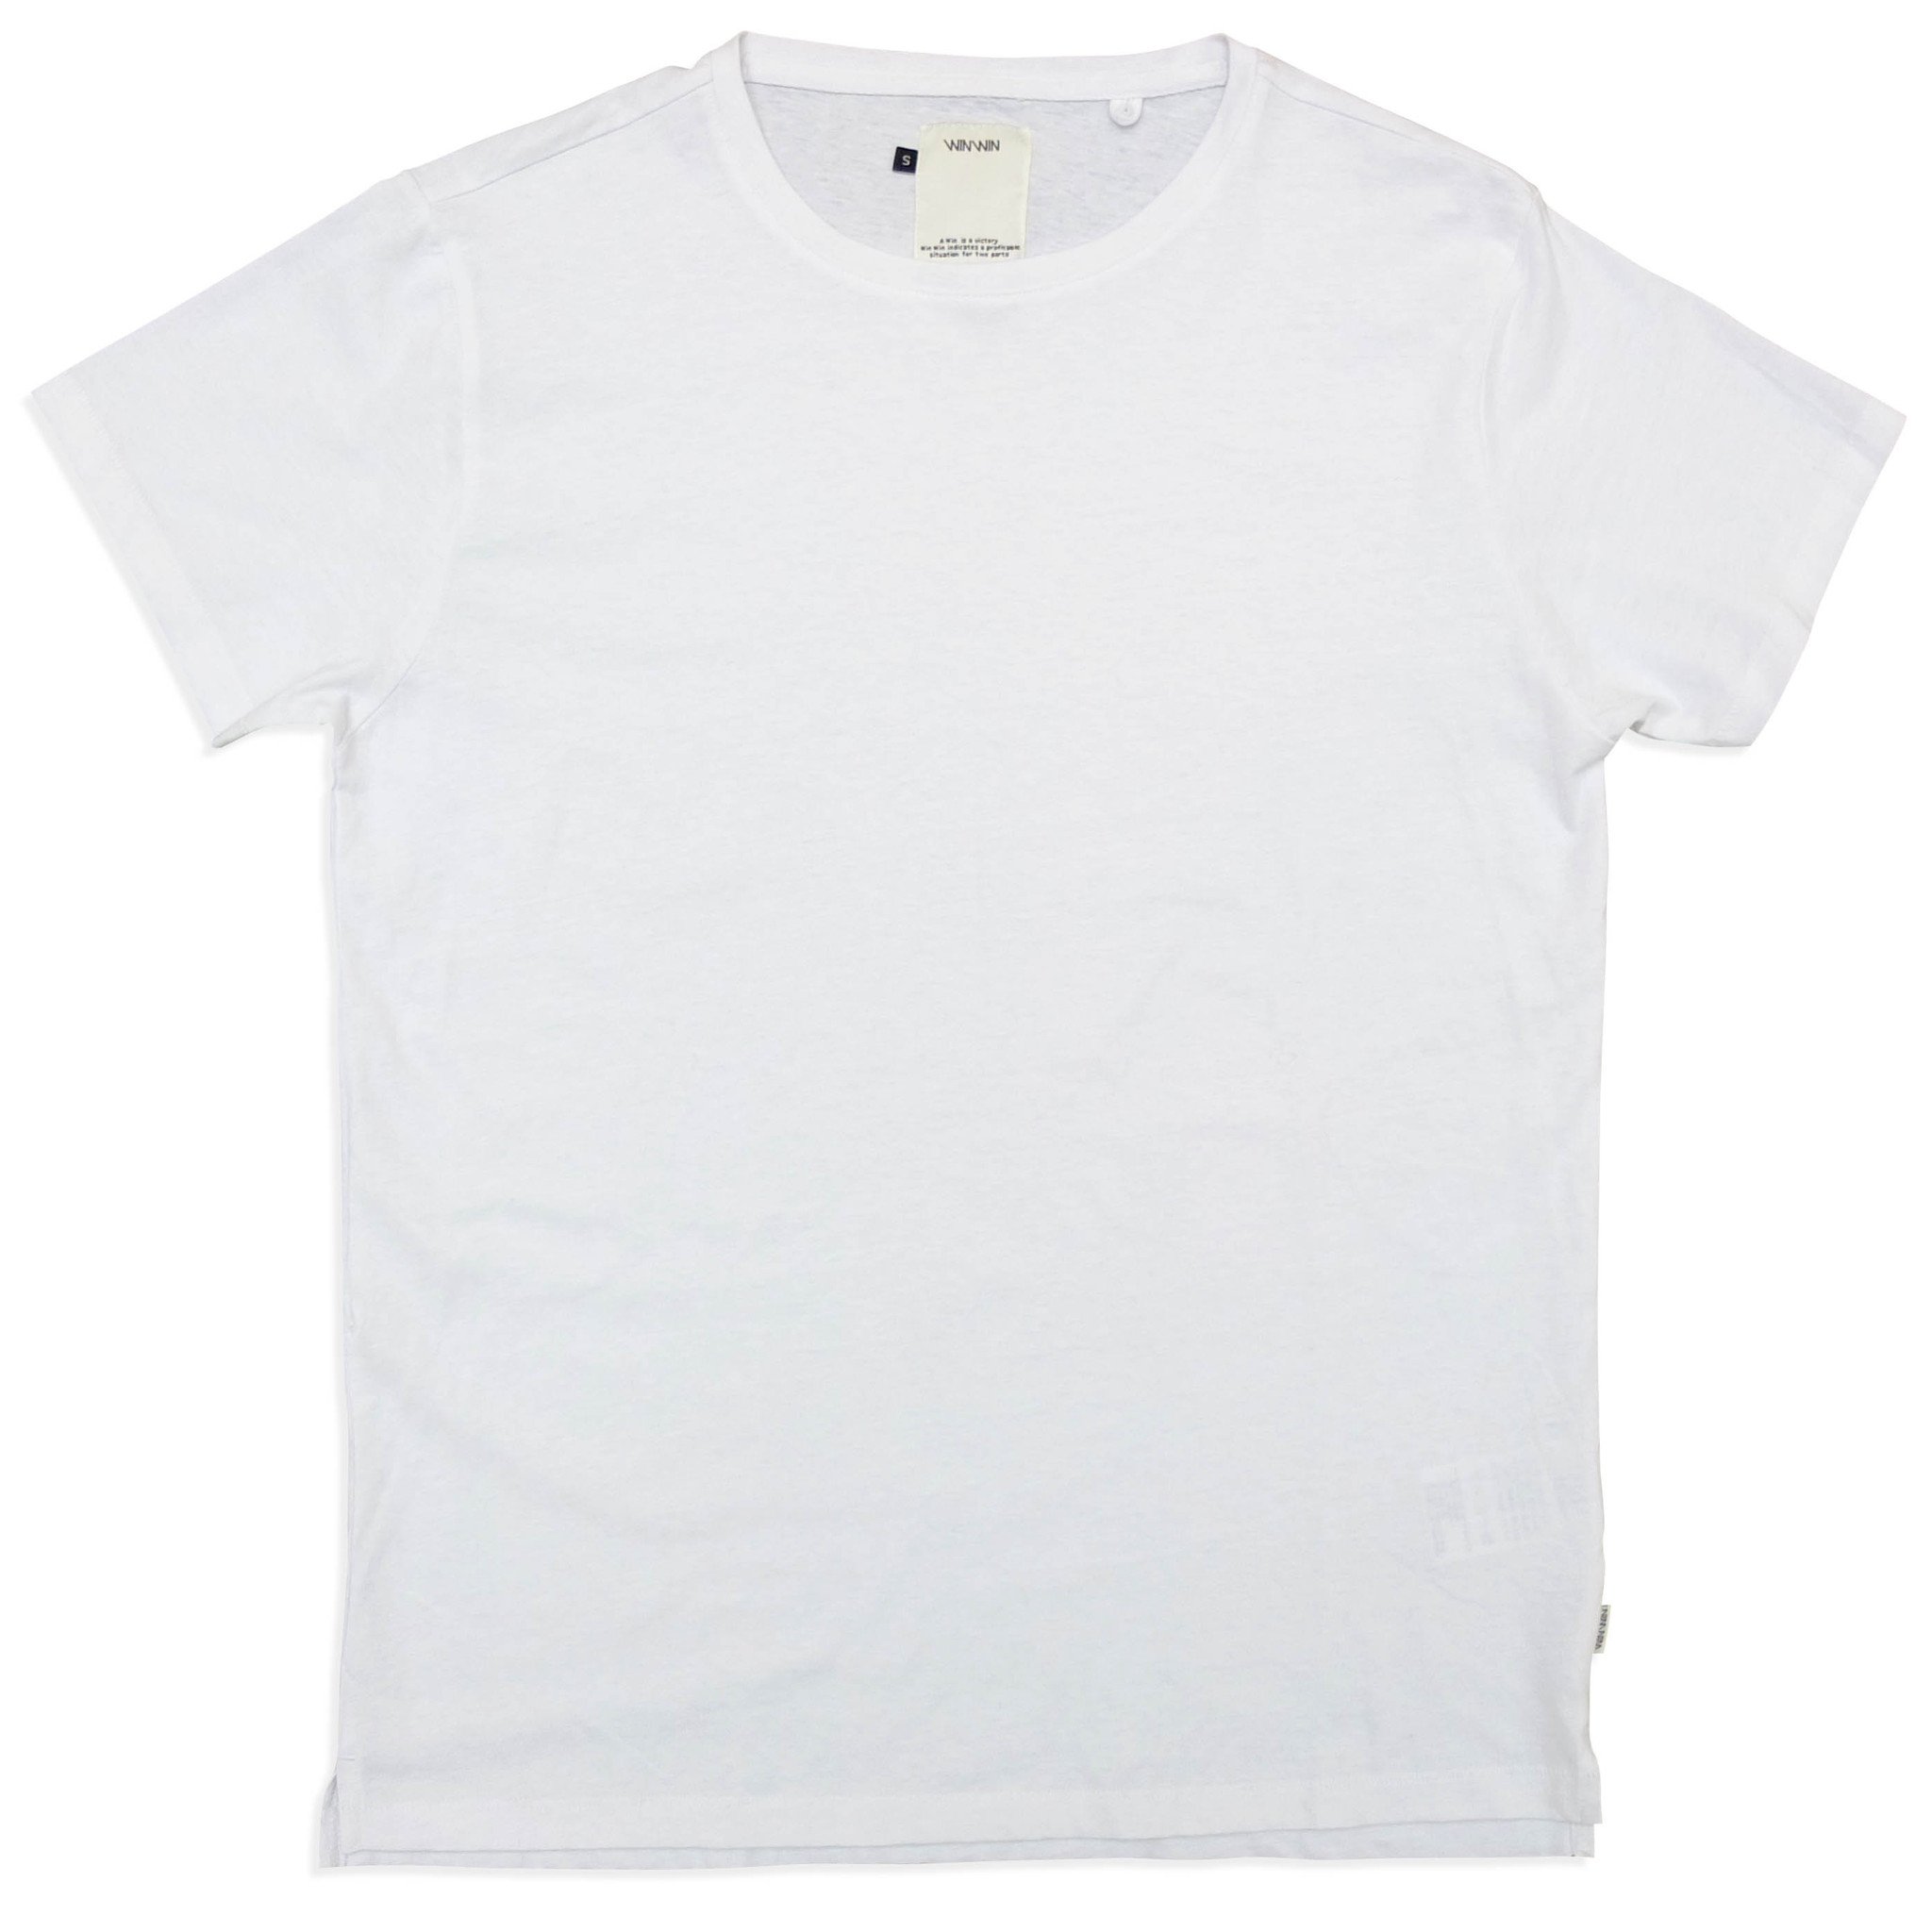 Probat - Hvit trøye uten trykk - 2015